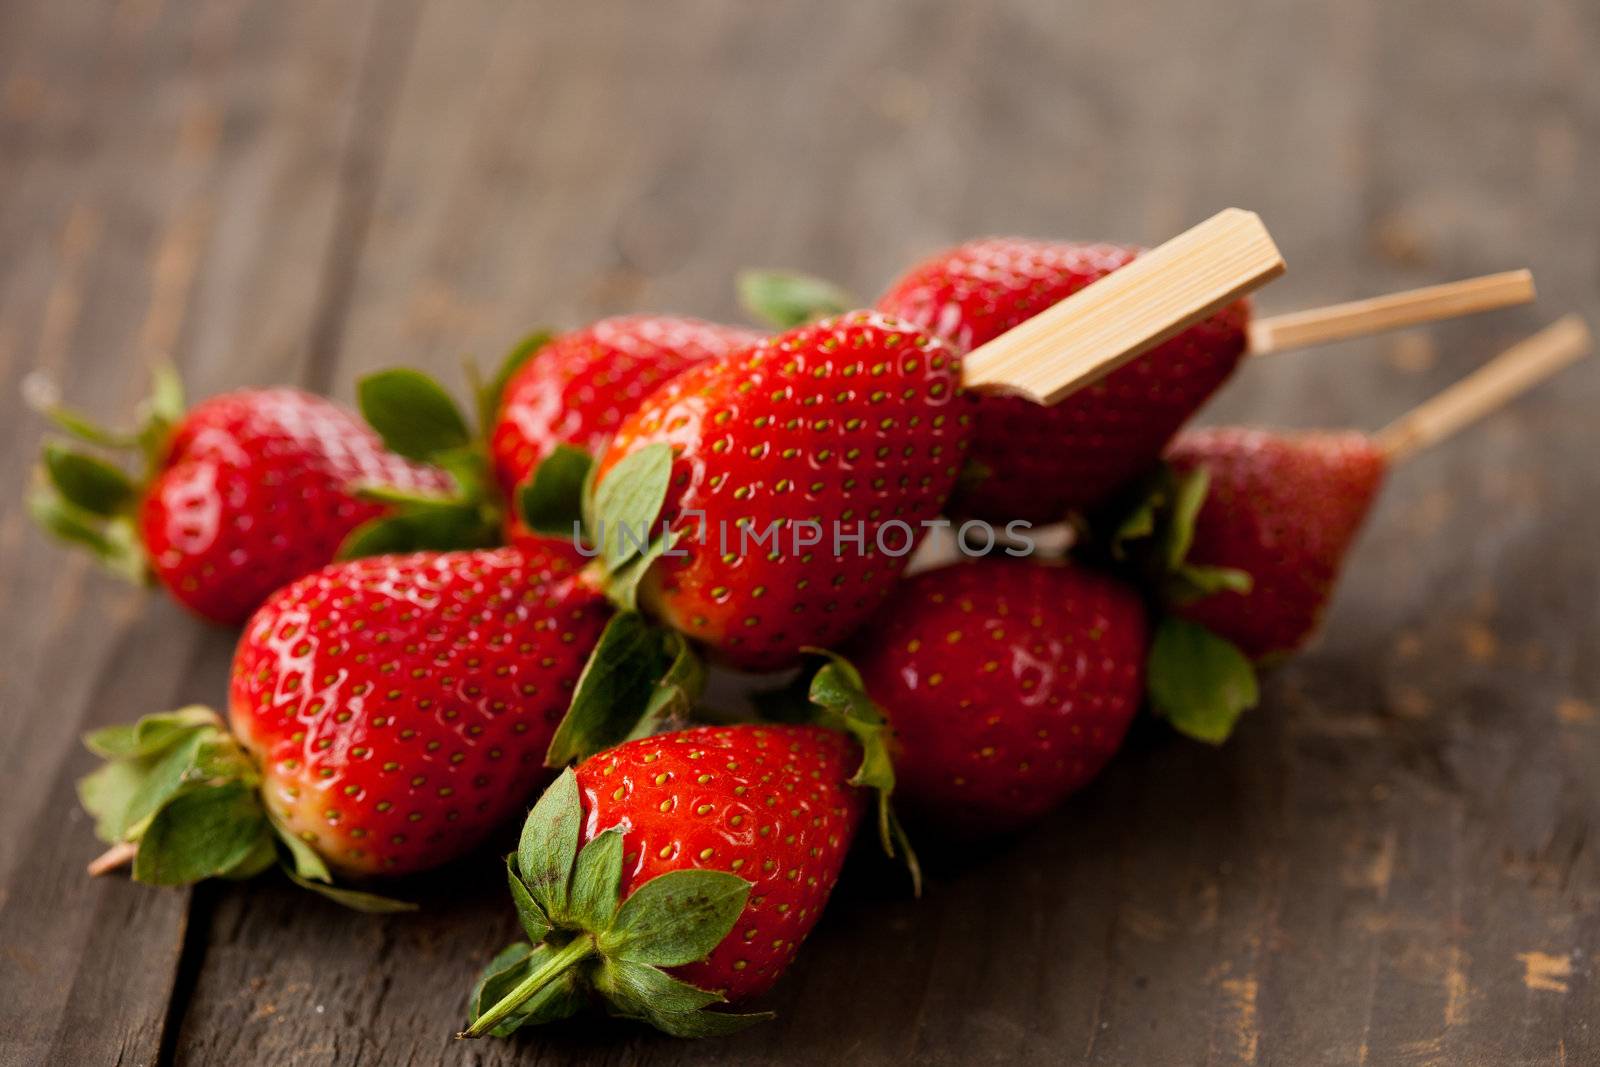 Strawberry snack by Fotosmurf